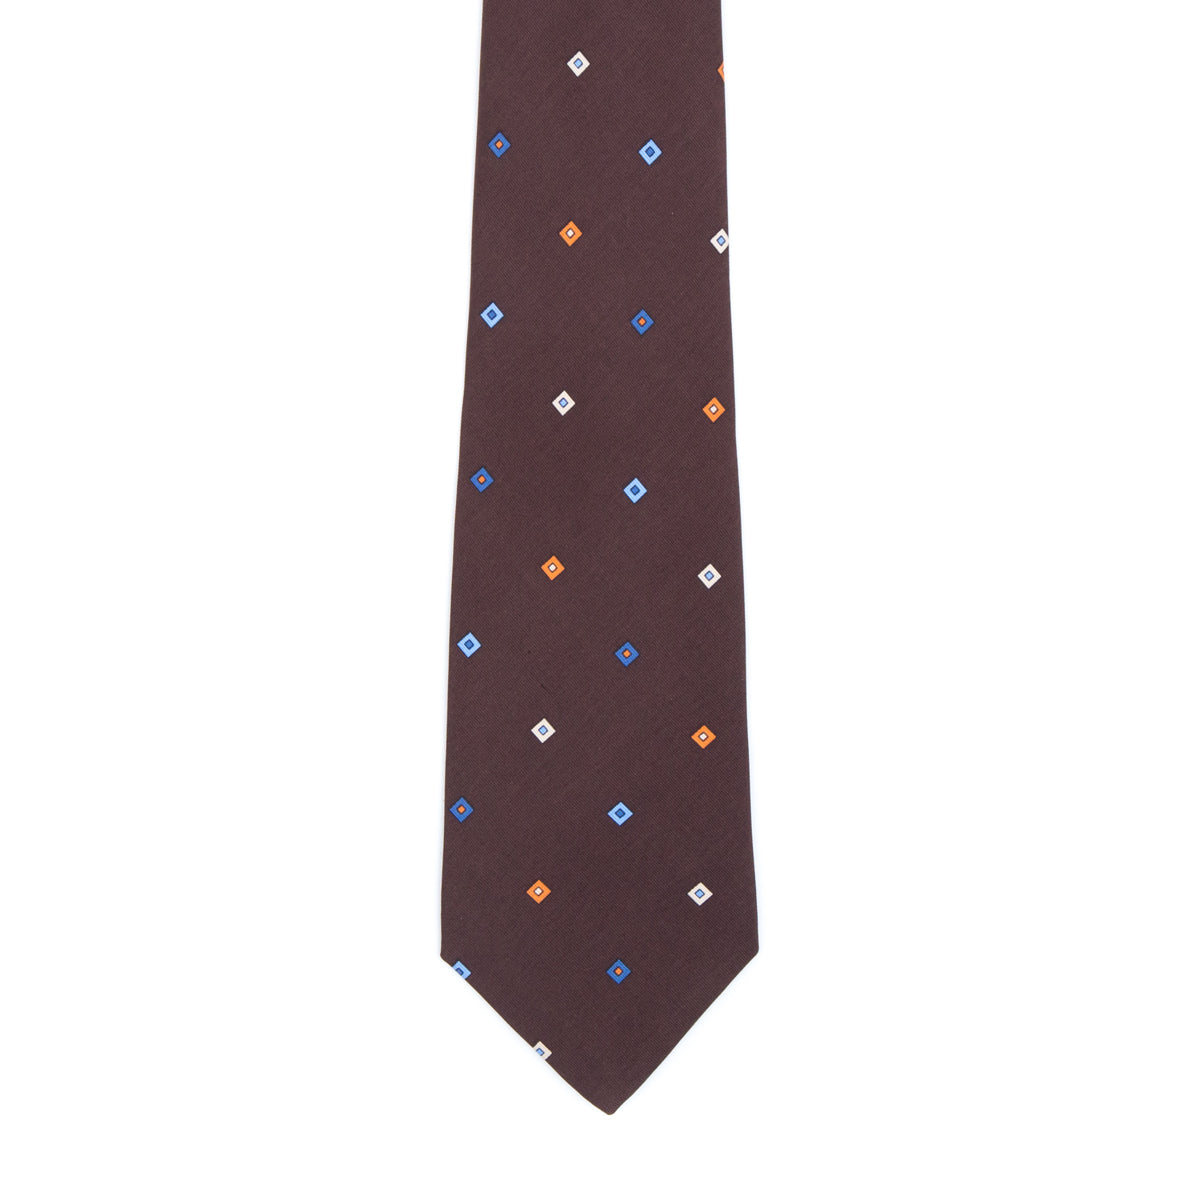 Chocolate diamond tie